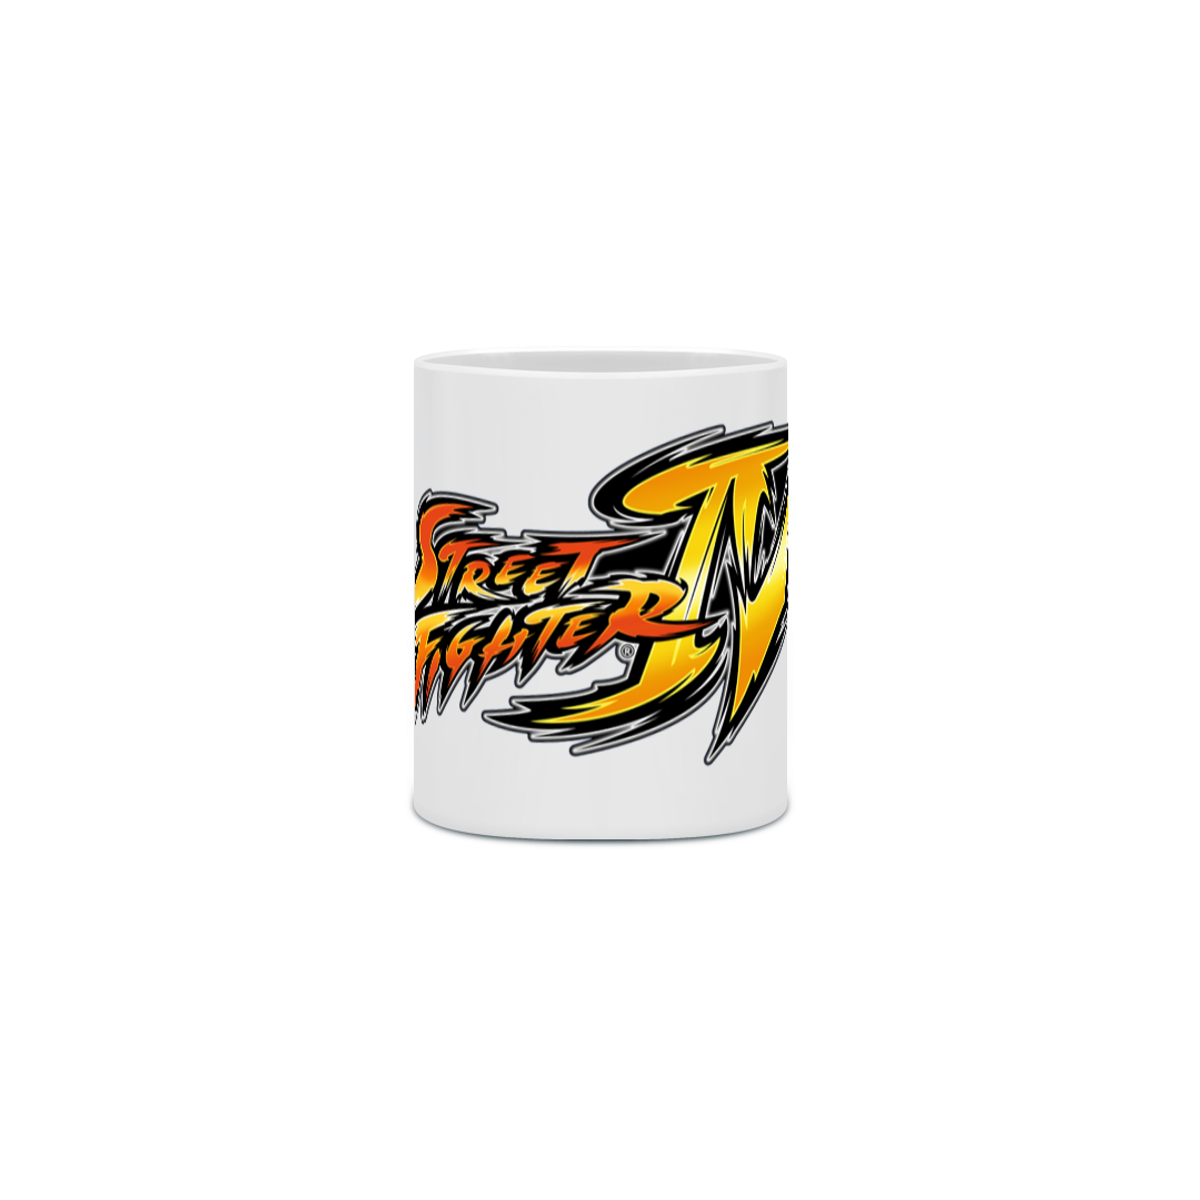 Nome do produto: Caneca - Street Fighter IV